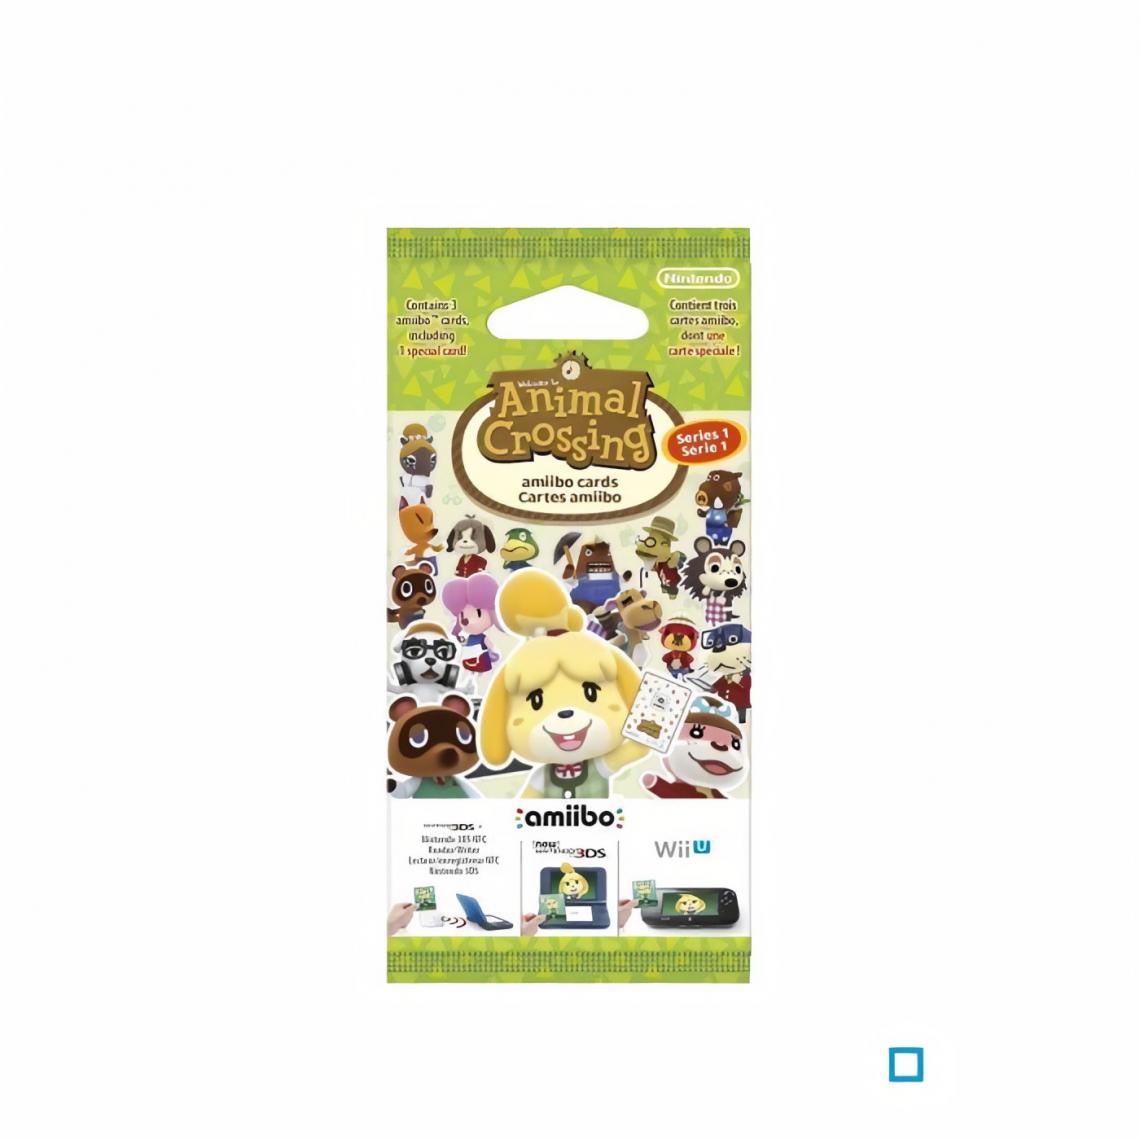 Nintendo - Cartes Animal Crossing Happy Home Designer (paquet de 3 cartes - 1 spéciale + 2 normales) - Mangas